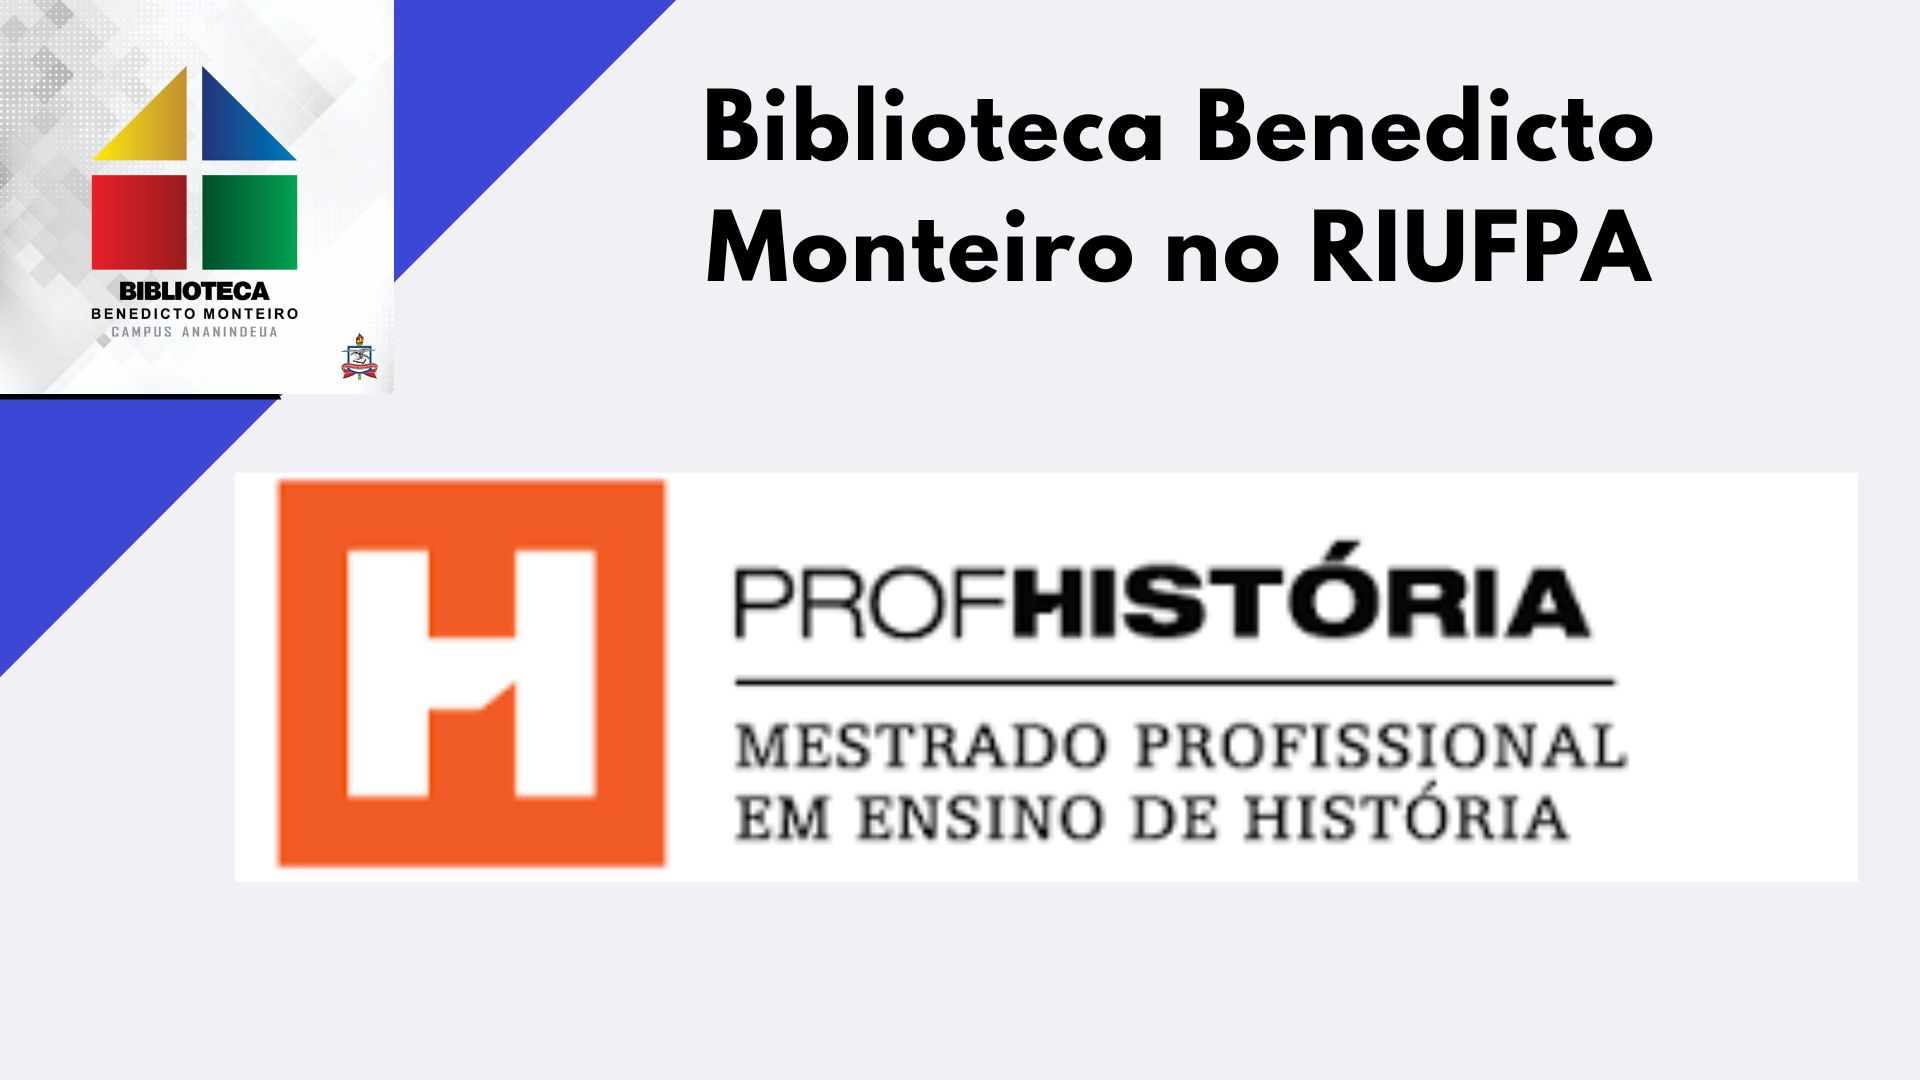 Mestrado Profissional em Ensino de História (PROFHISTÓRIA/Ananindeua)